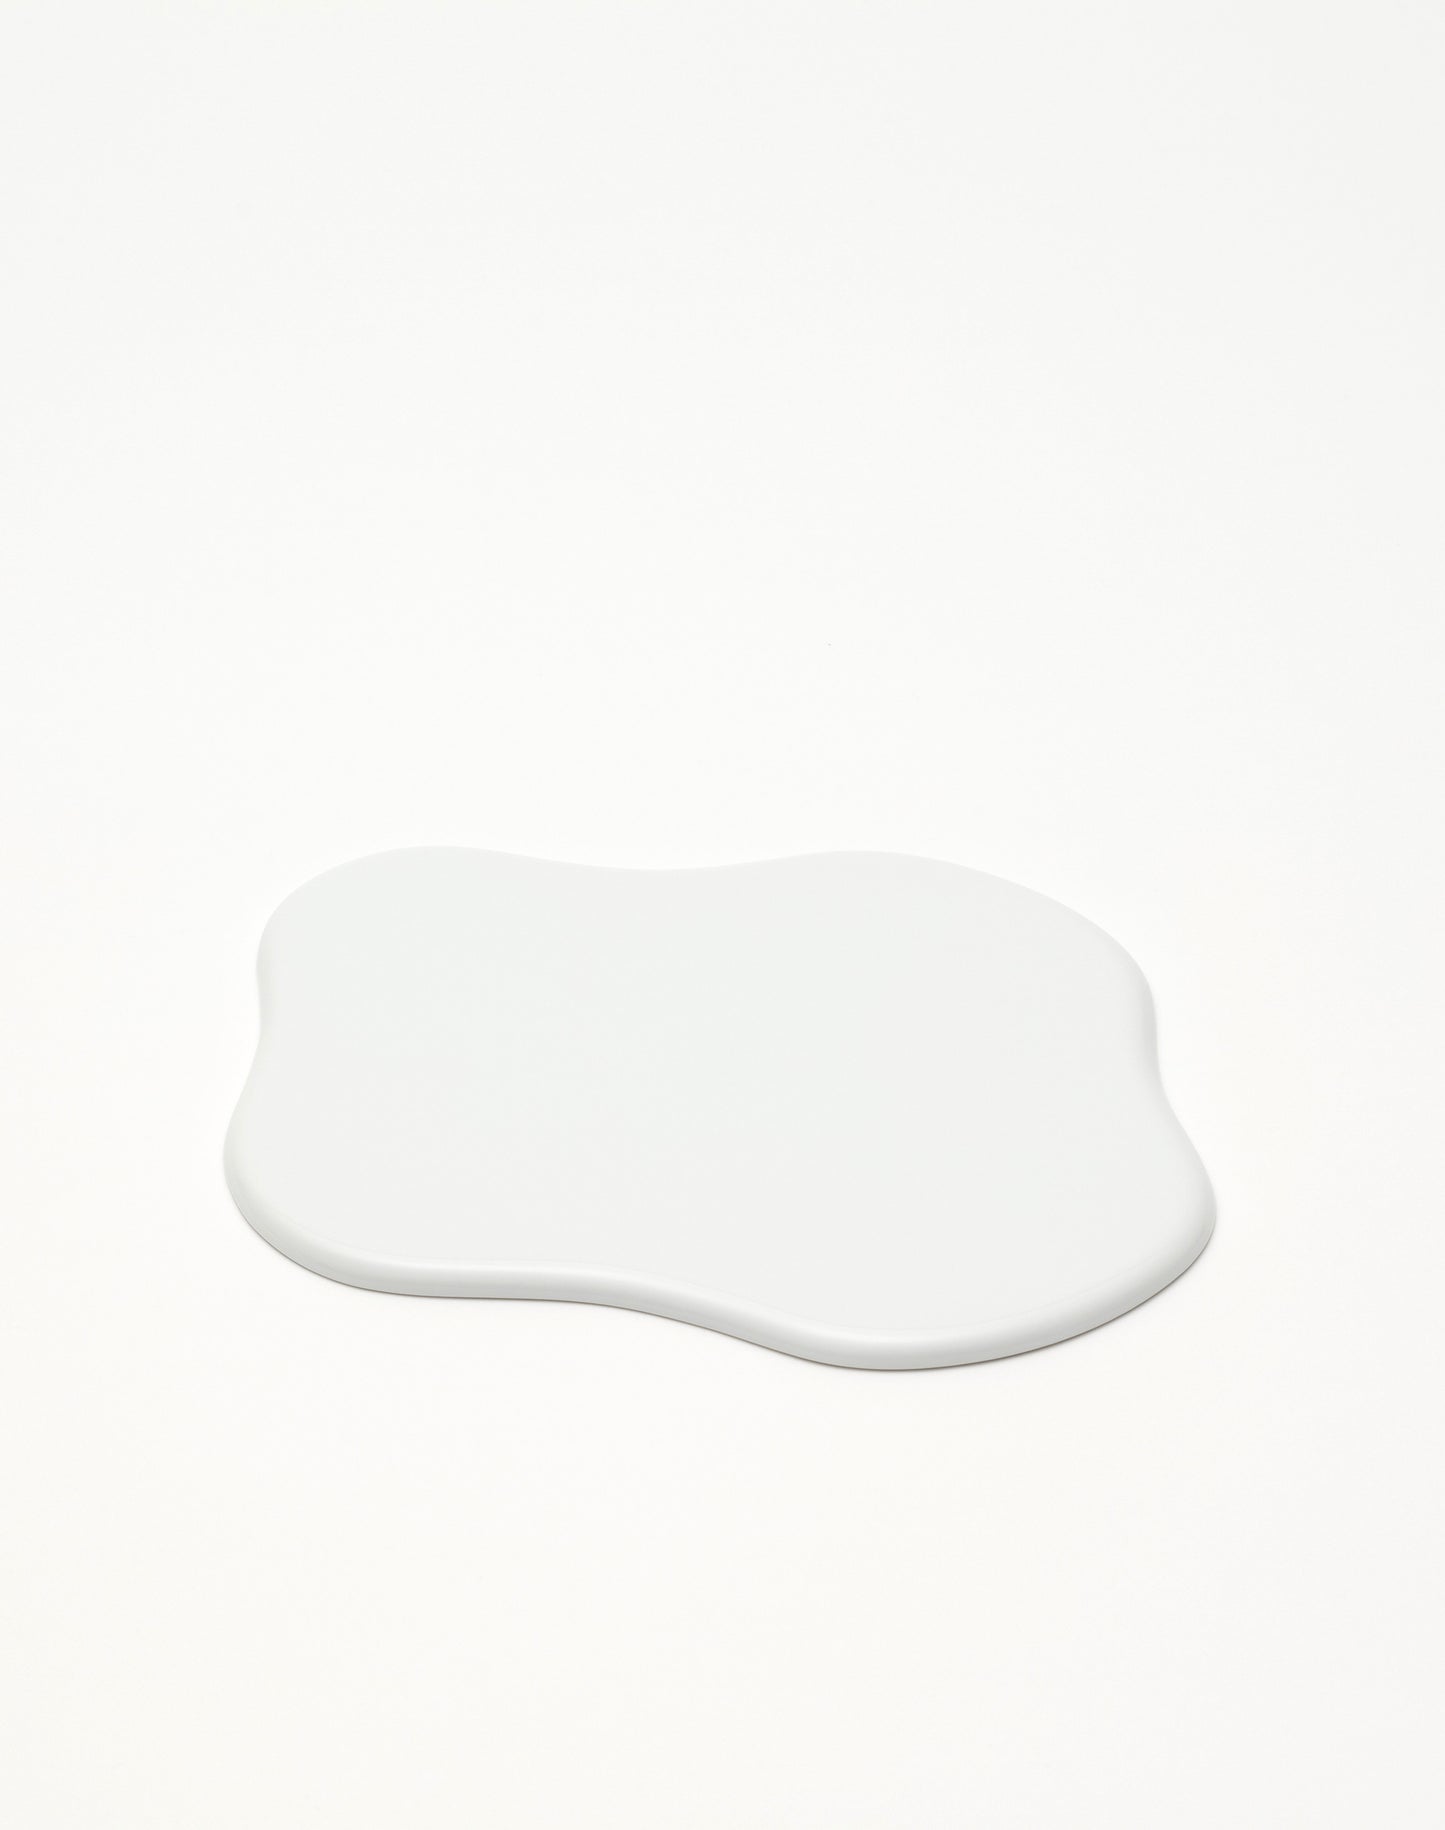 TAF pottery tray white GS028 - MONOLAB